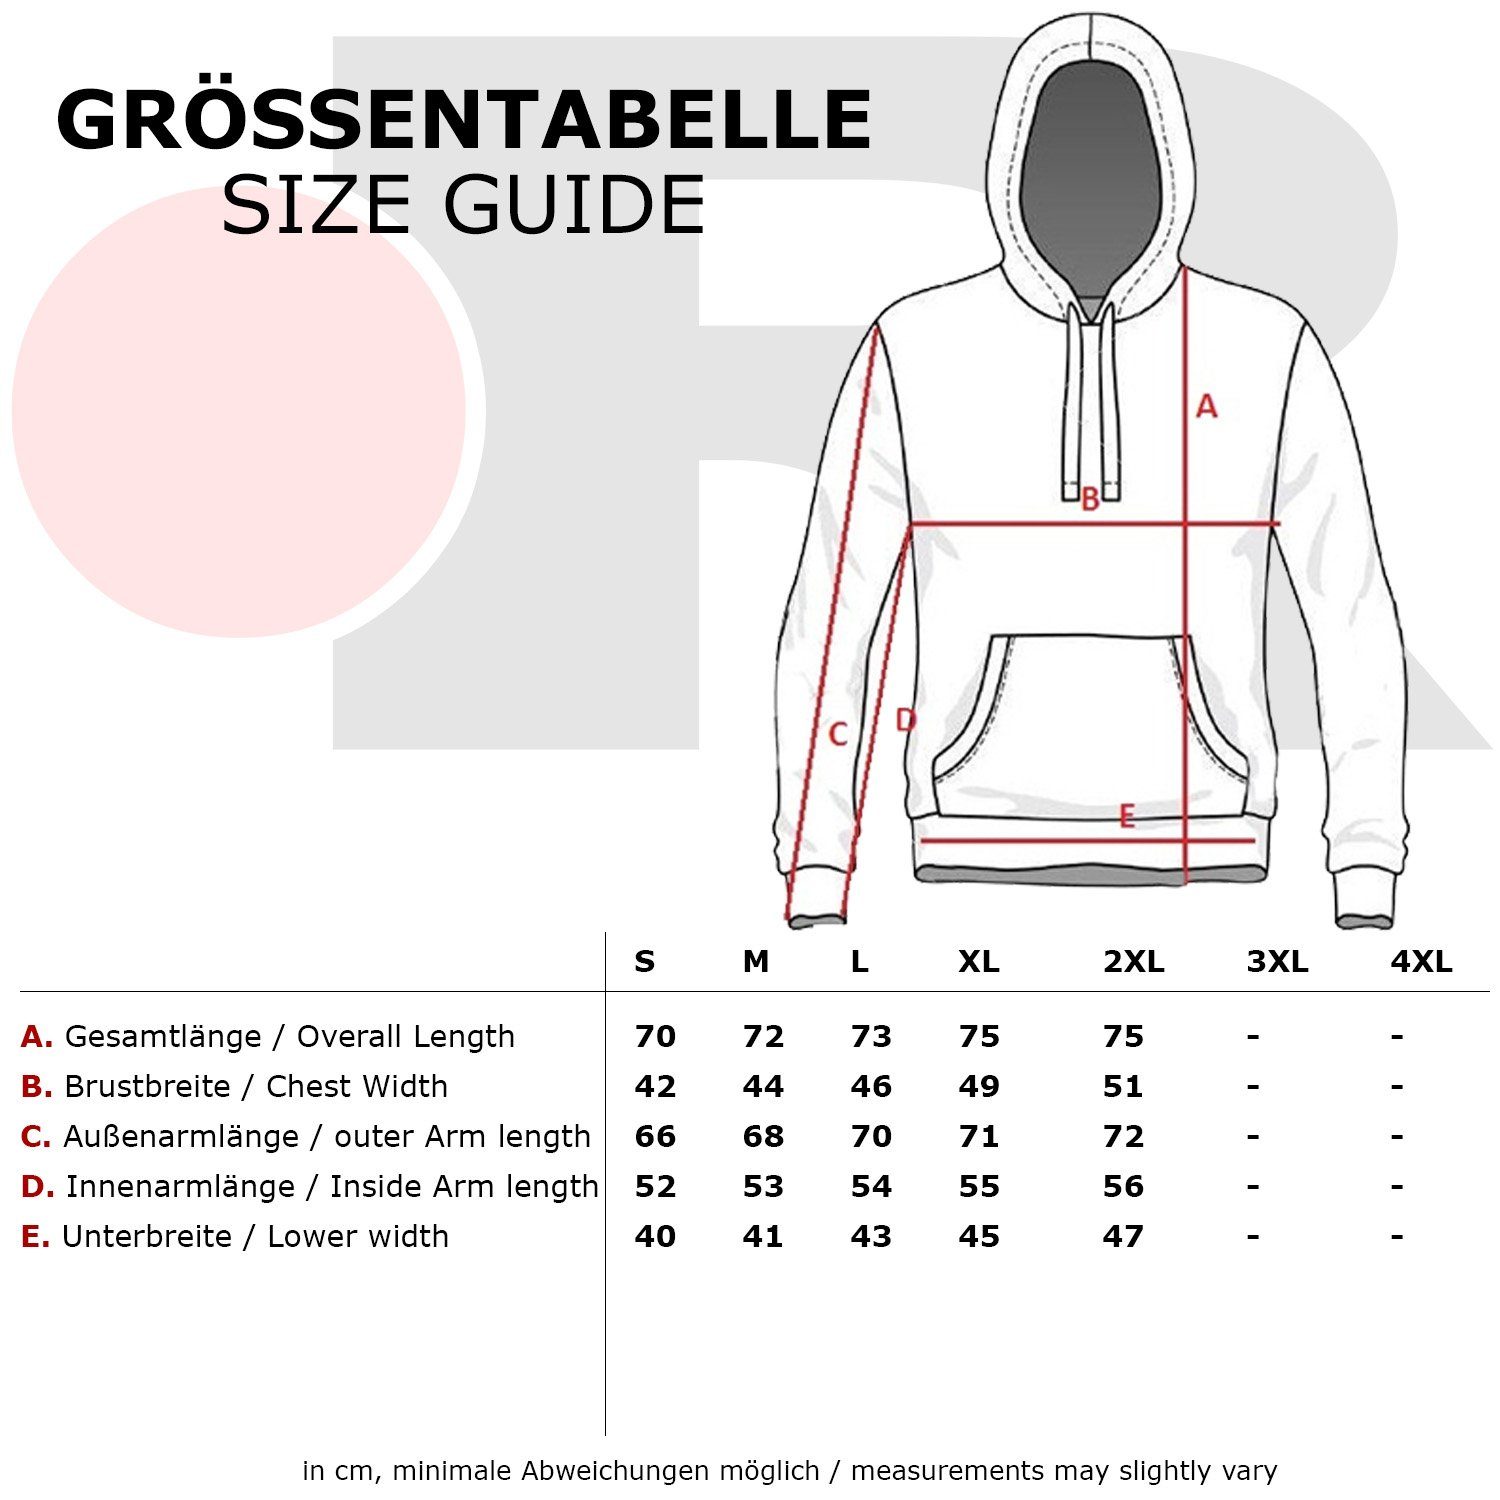 Sweatshirt (1-tlg) RS-1003 anthrazit-weiß Layer-Look Kapuzensweatshirt Sweatshirt Reslad Kapuzen Reslad Herren